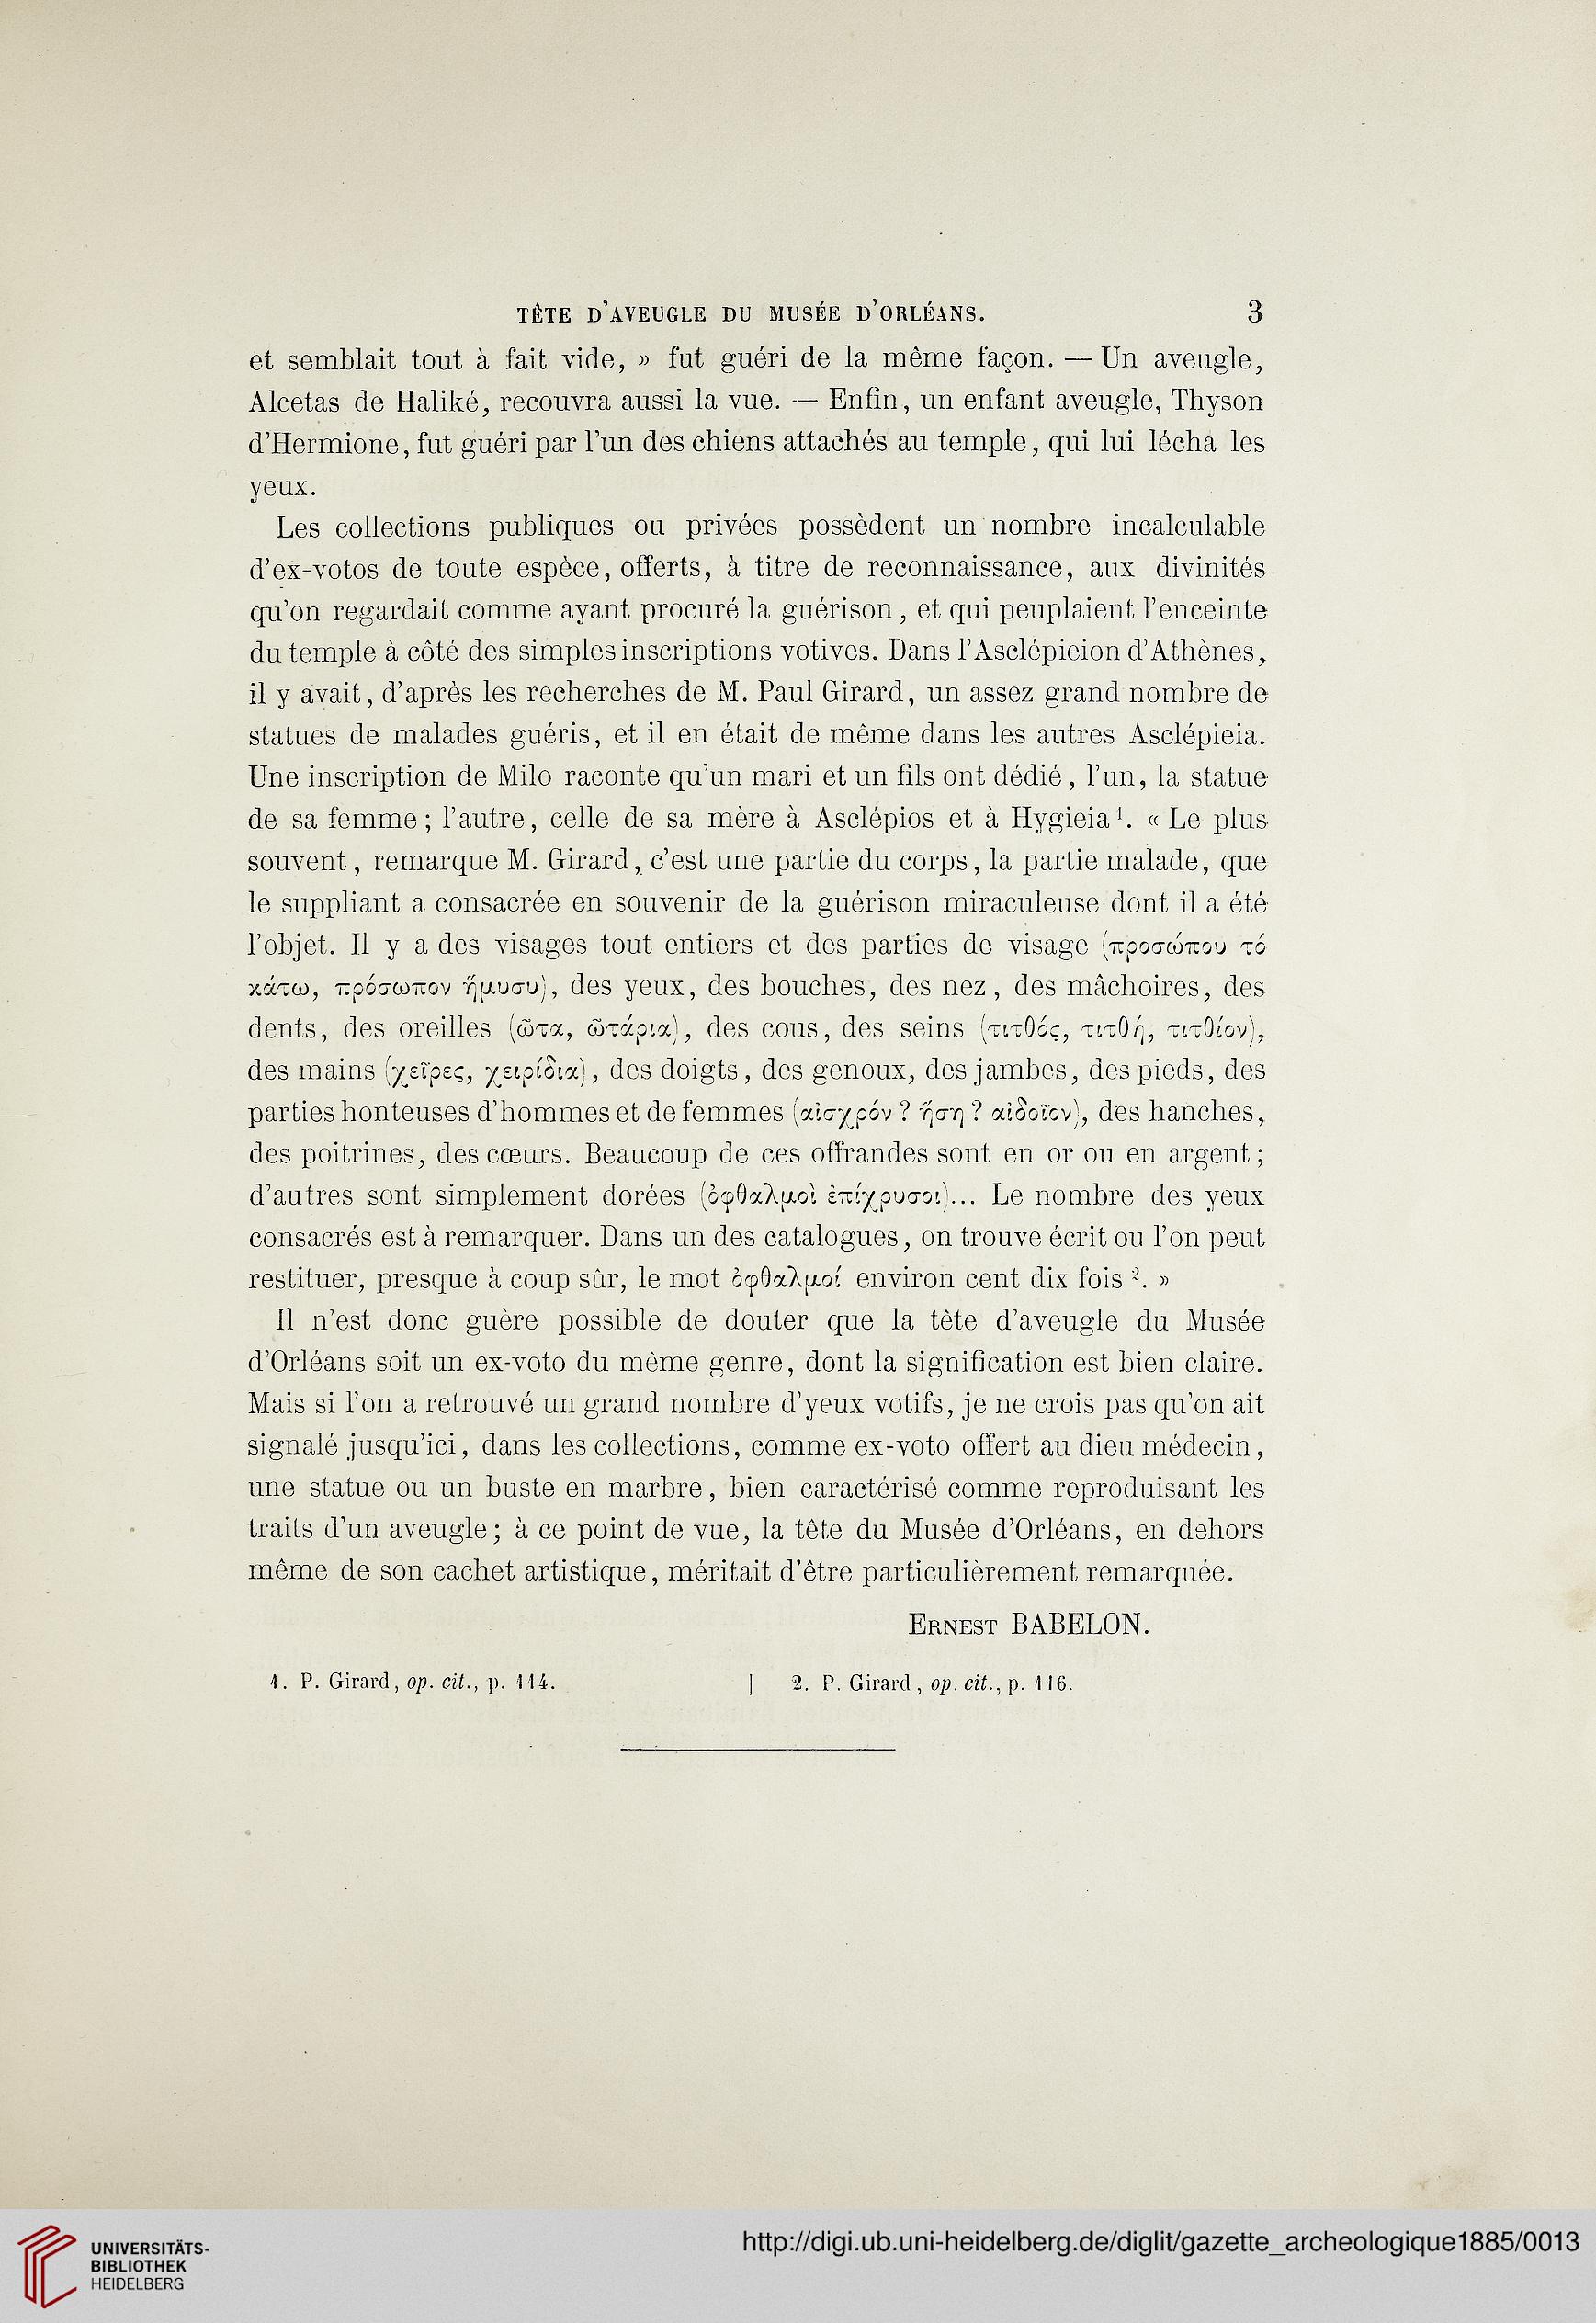 gazette archeologique revue des musees nationaux 10 1885